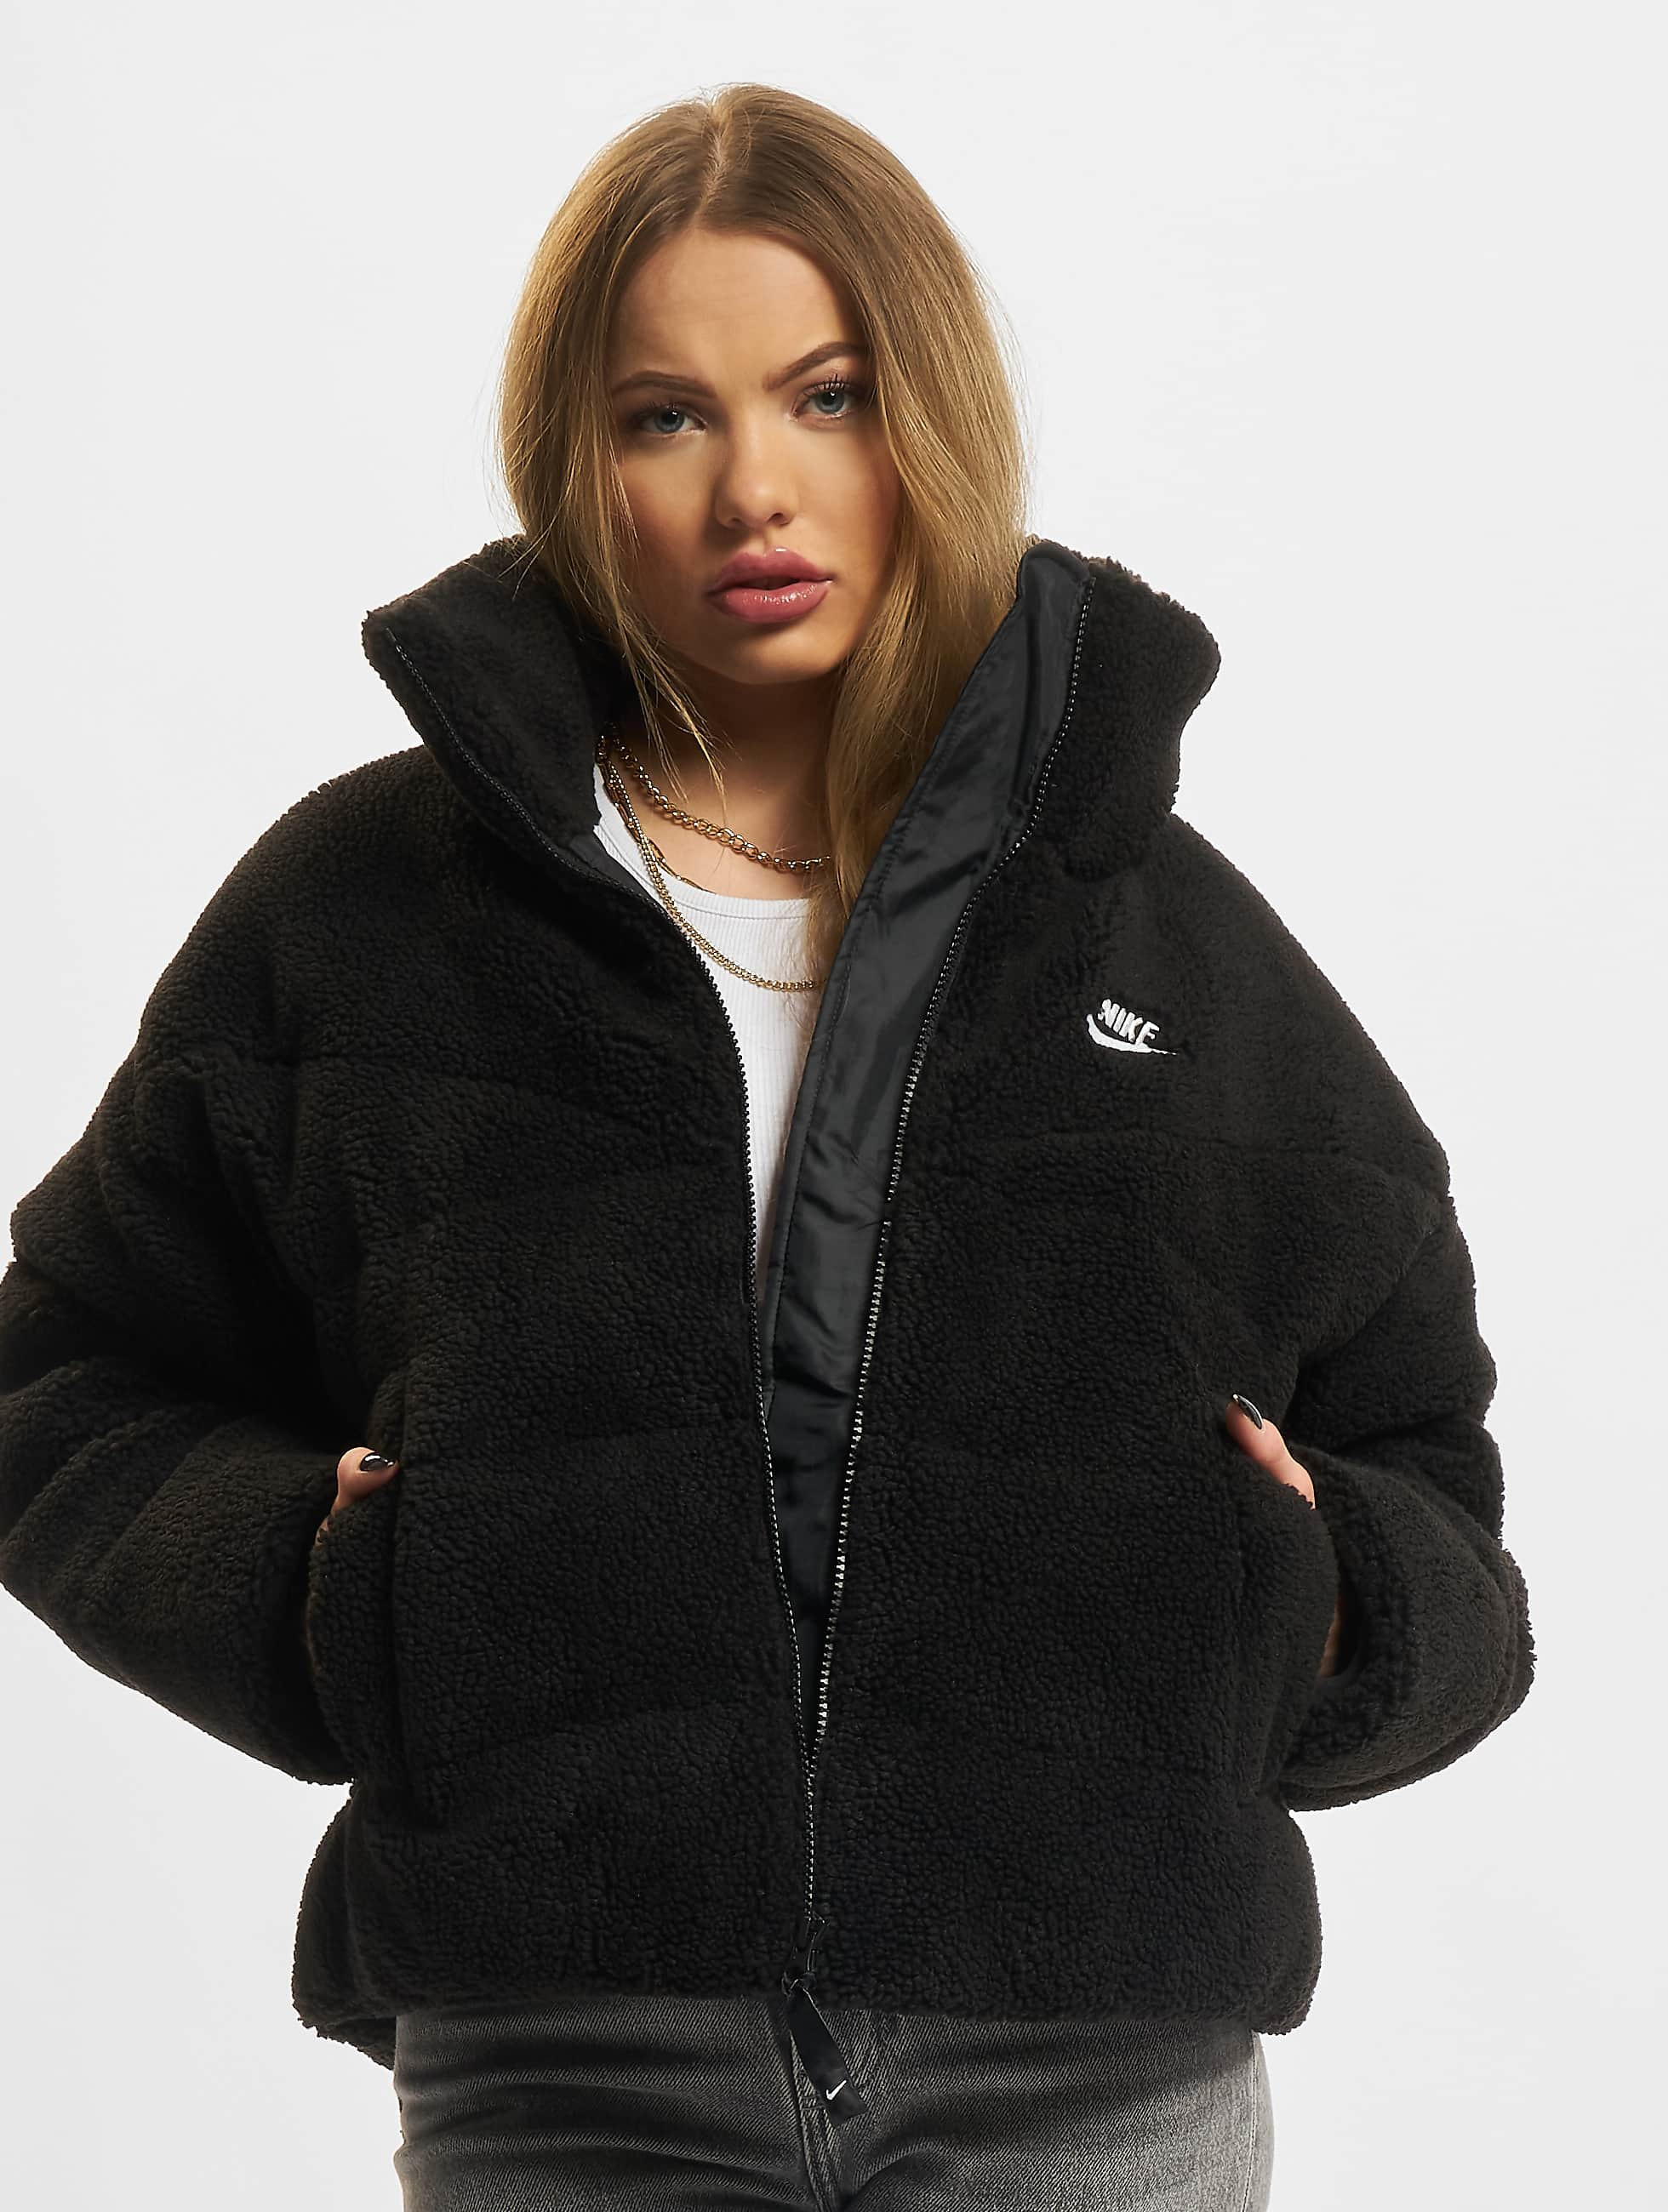 Gronden domesticeren voor de hand liggend Nike jas / winterjas TF City Sherpa in zwart 862122